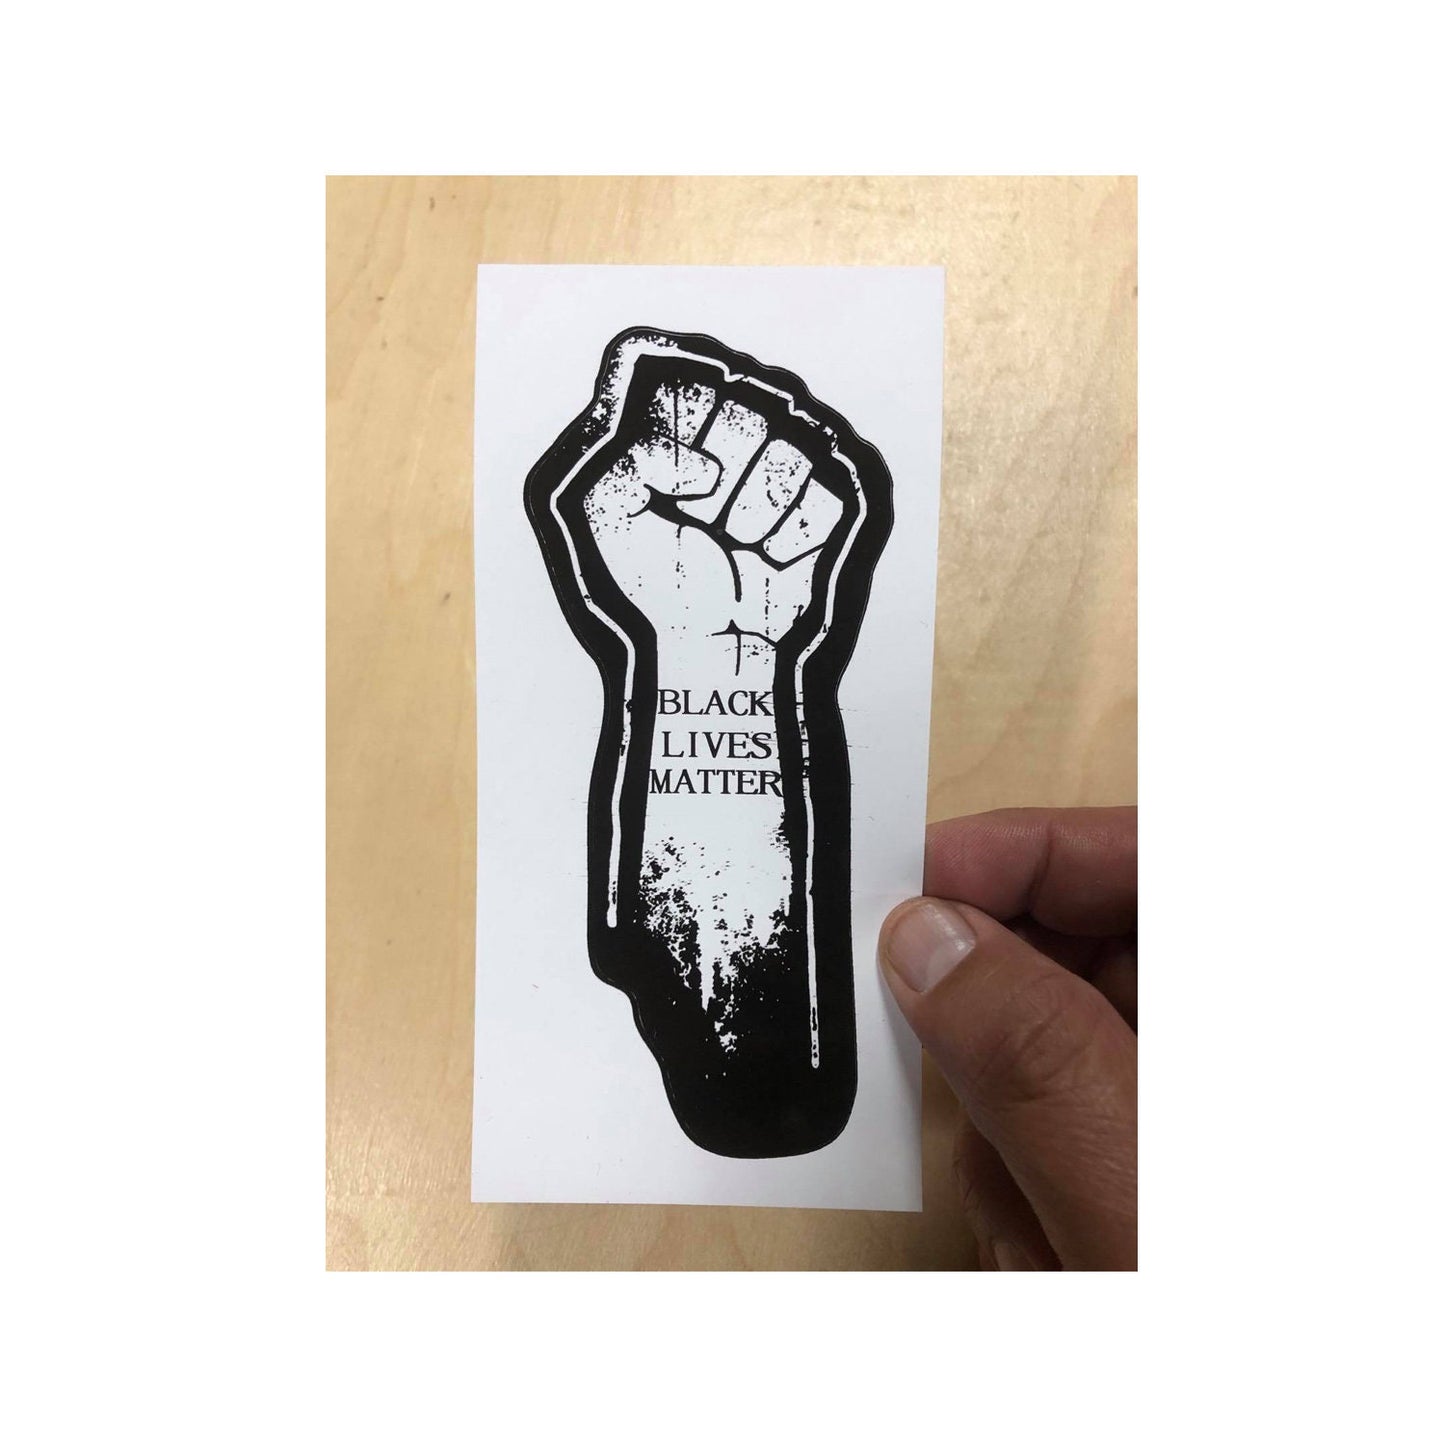 Black Lives Matter Sticker, George Floyd Sticker, BLM Sticker, Punk Sticker, Protest Sticker, Resist Sticker, Daunte Wright Sticker